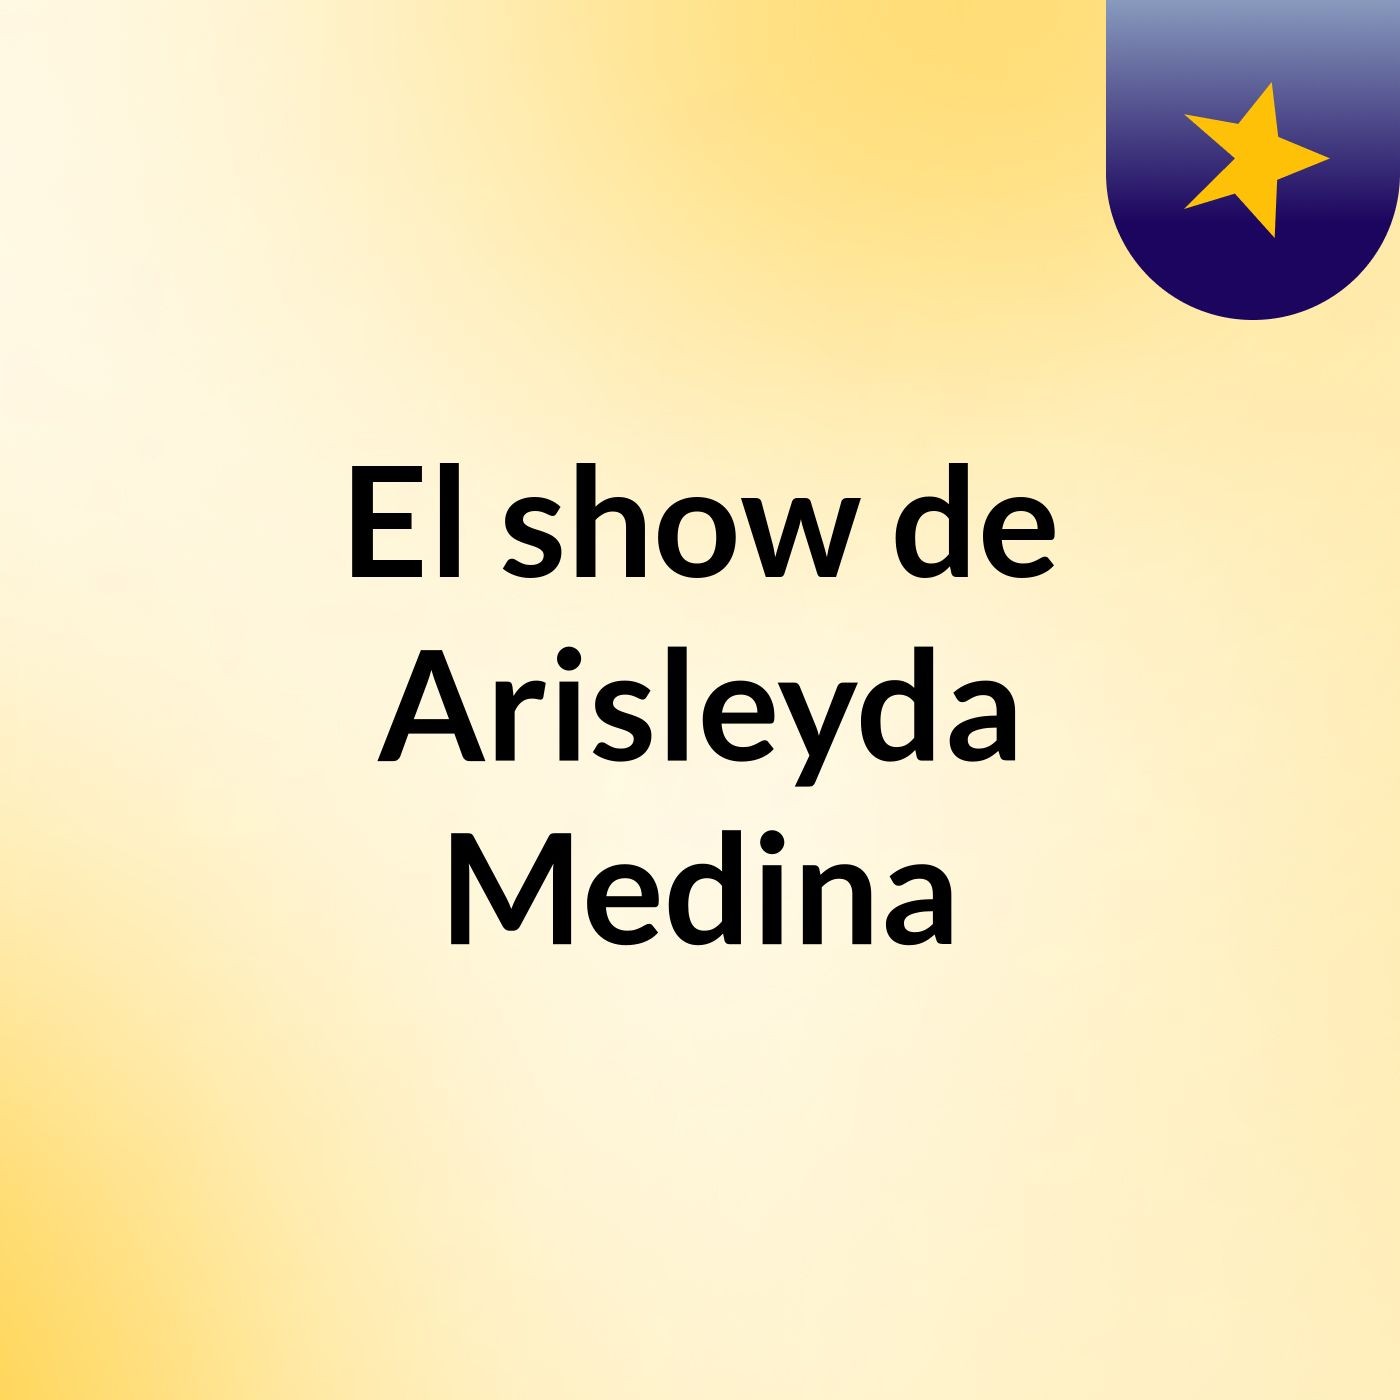 El show de Arisleyda Medina